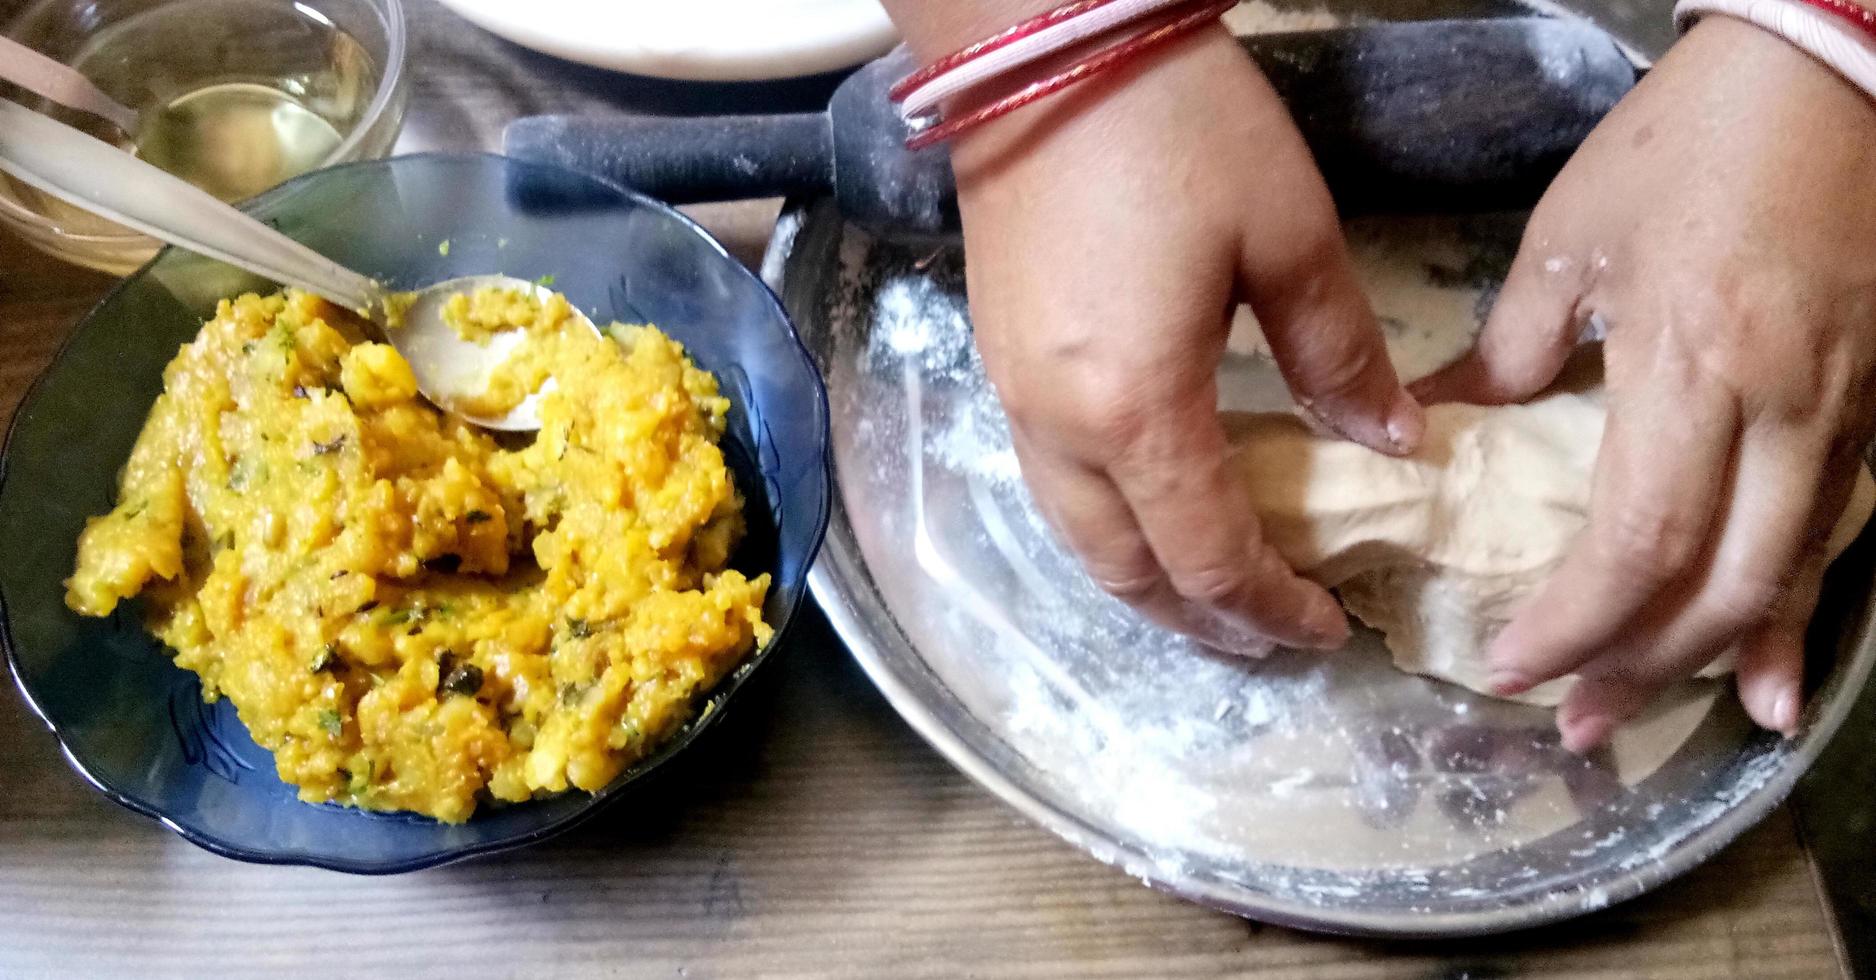 elaboración de pan indio tradicional - aloo paratha o aalu parotha, pan relleno de patata foto